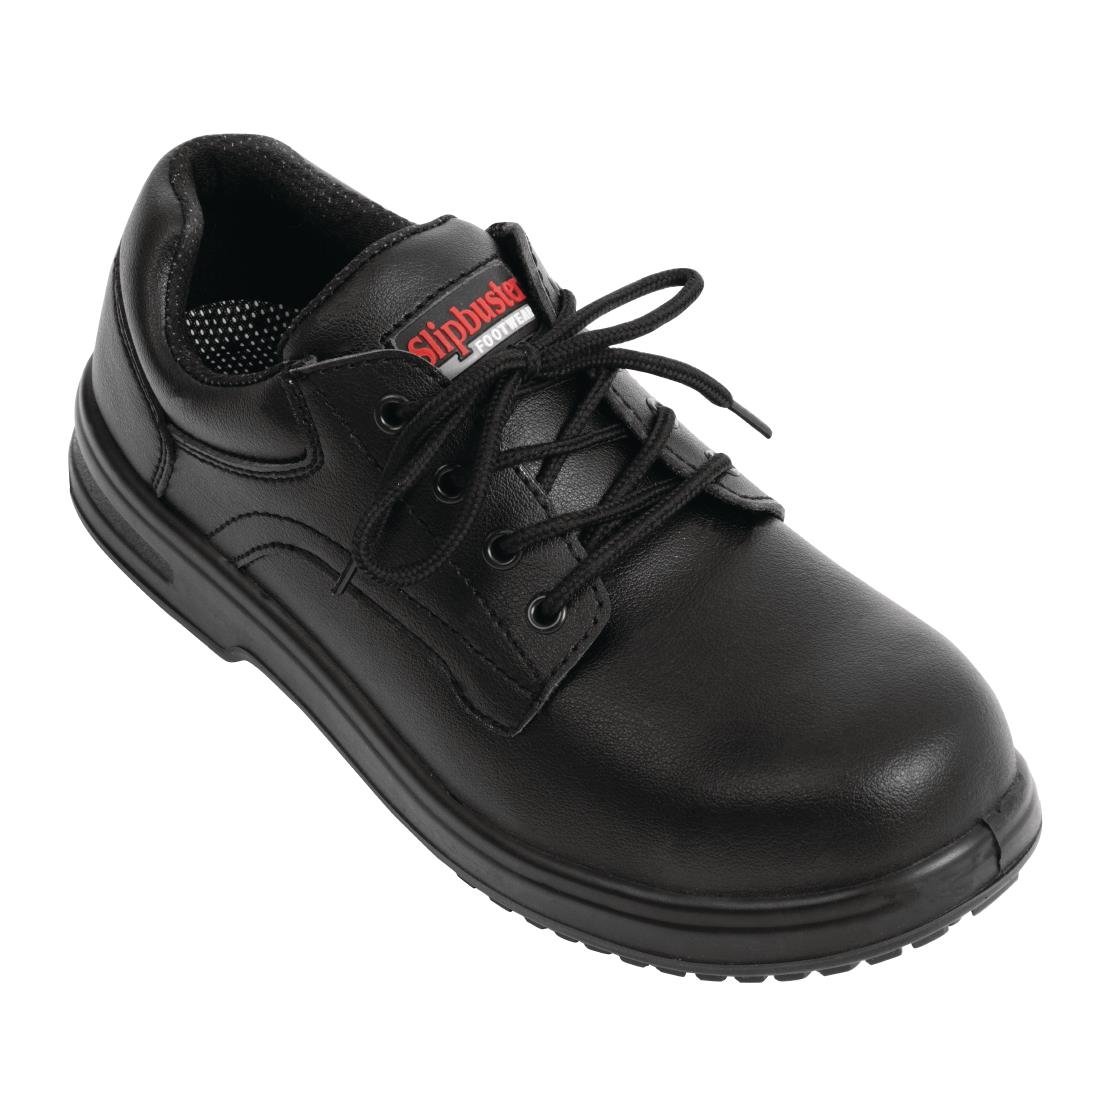 BB498-47 Slipbuster Basic Shoes Slip Resistant Black 47 JD Catering Equipment Solutions Ltd